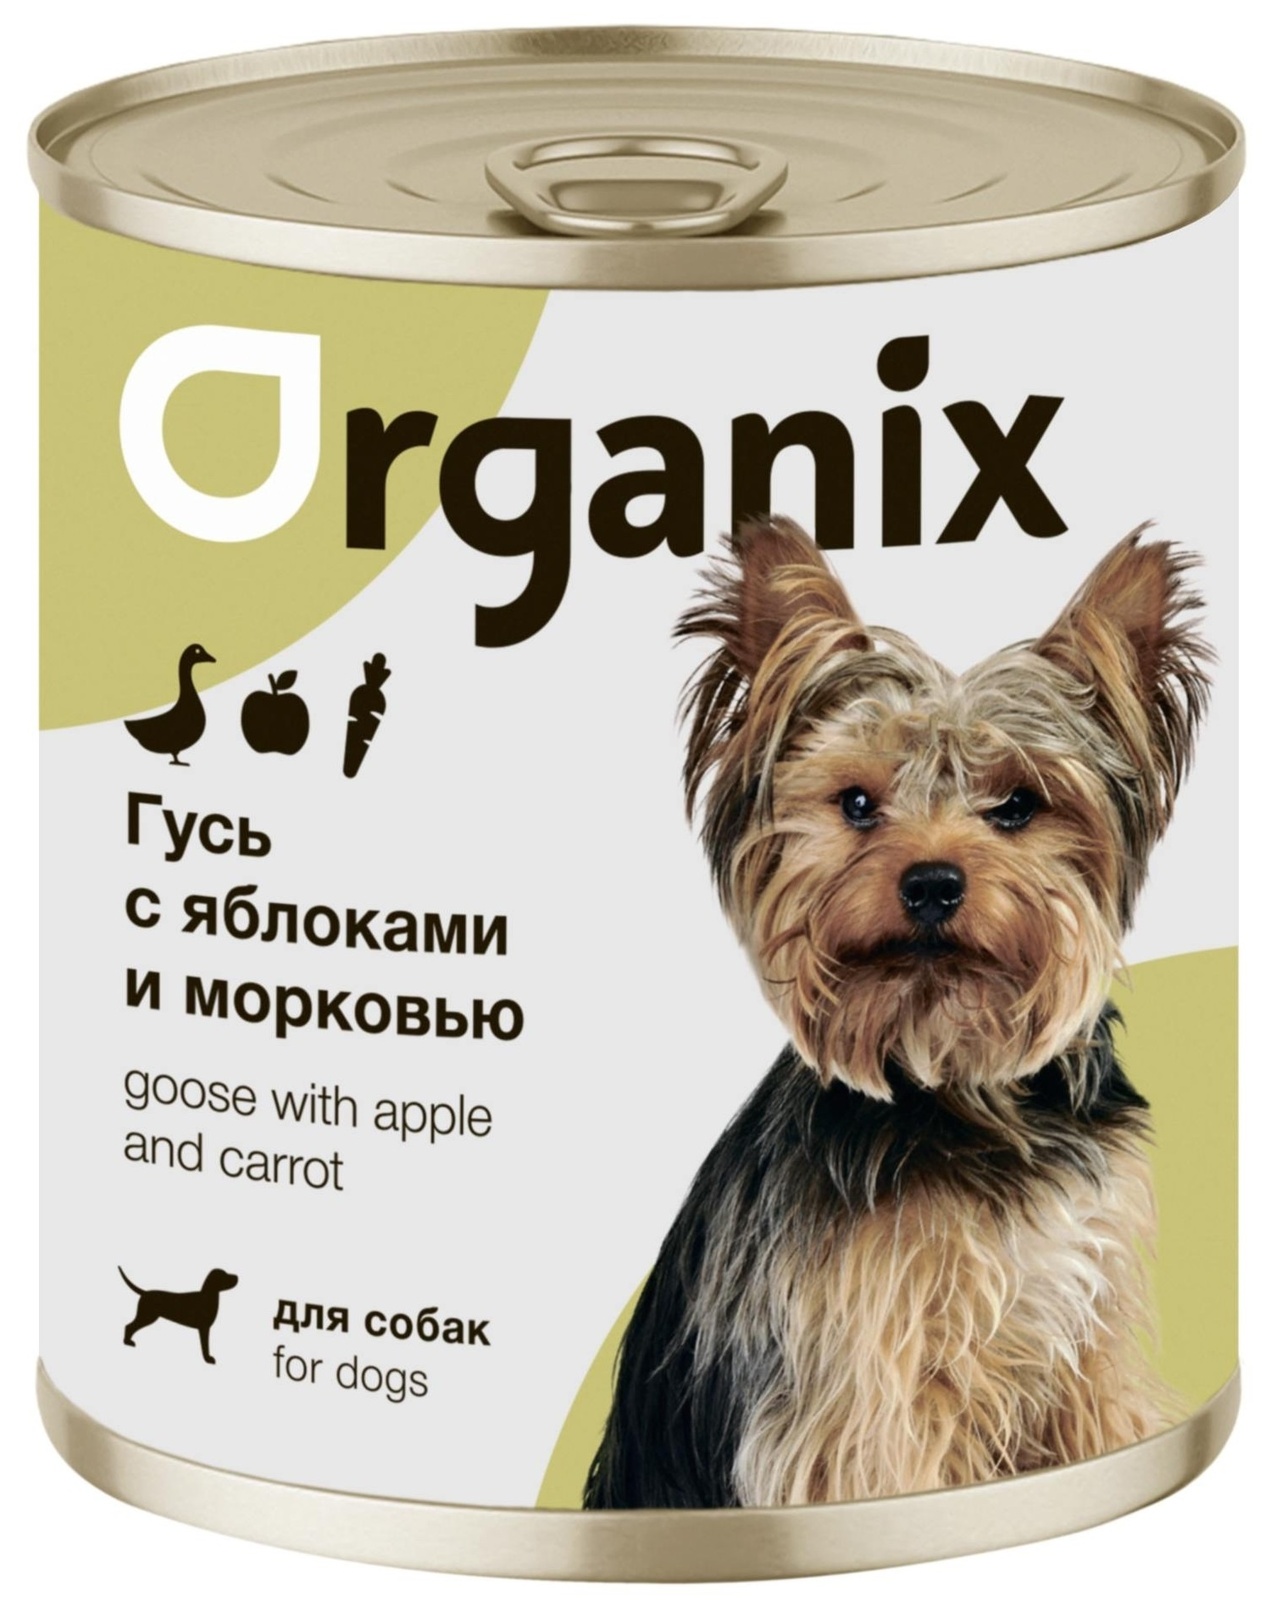 Organix консервы Organix консервы для собак Фрикасе из гуся с яблоками и морковкой (750 г) organix консервы organix консервы для собак ягненок с рубцом и морковью 750 г